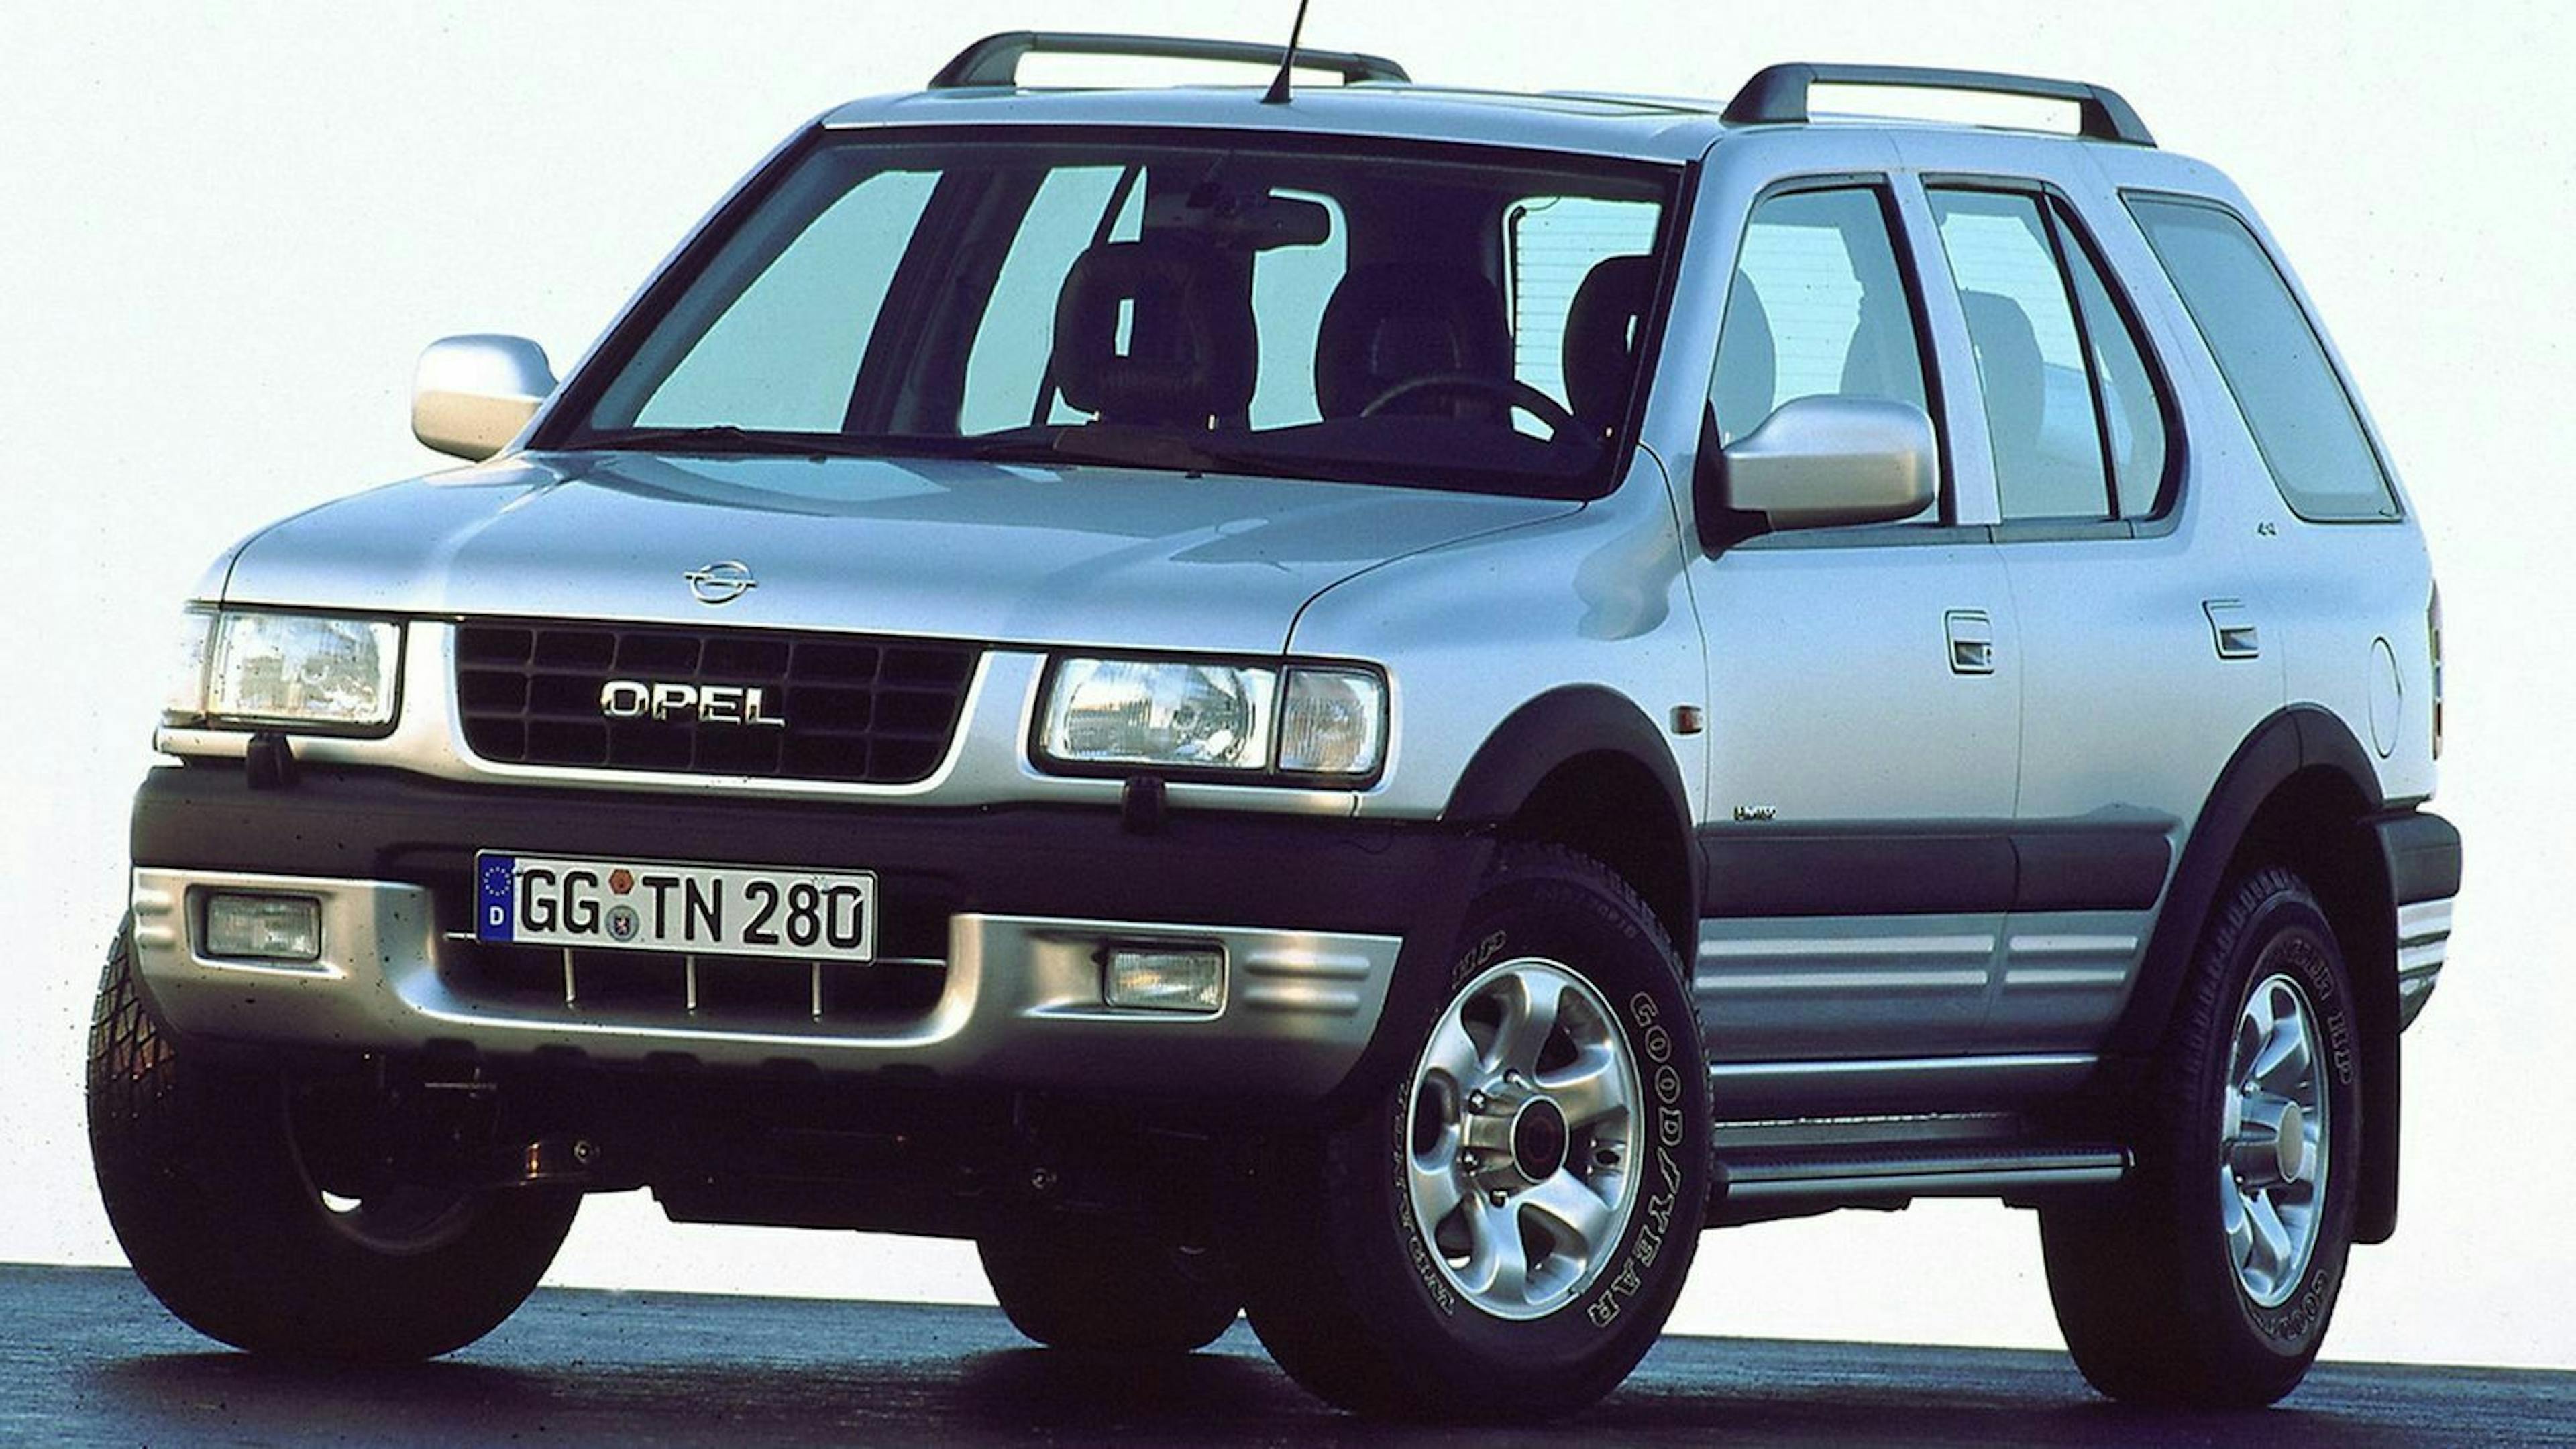 Zu sehen ist der Opel Frontera